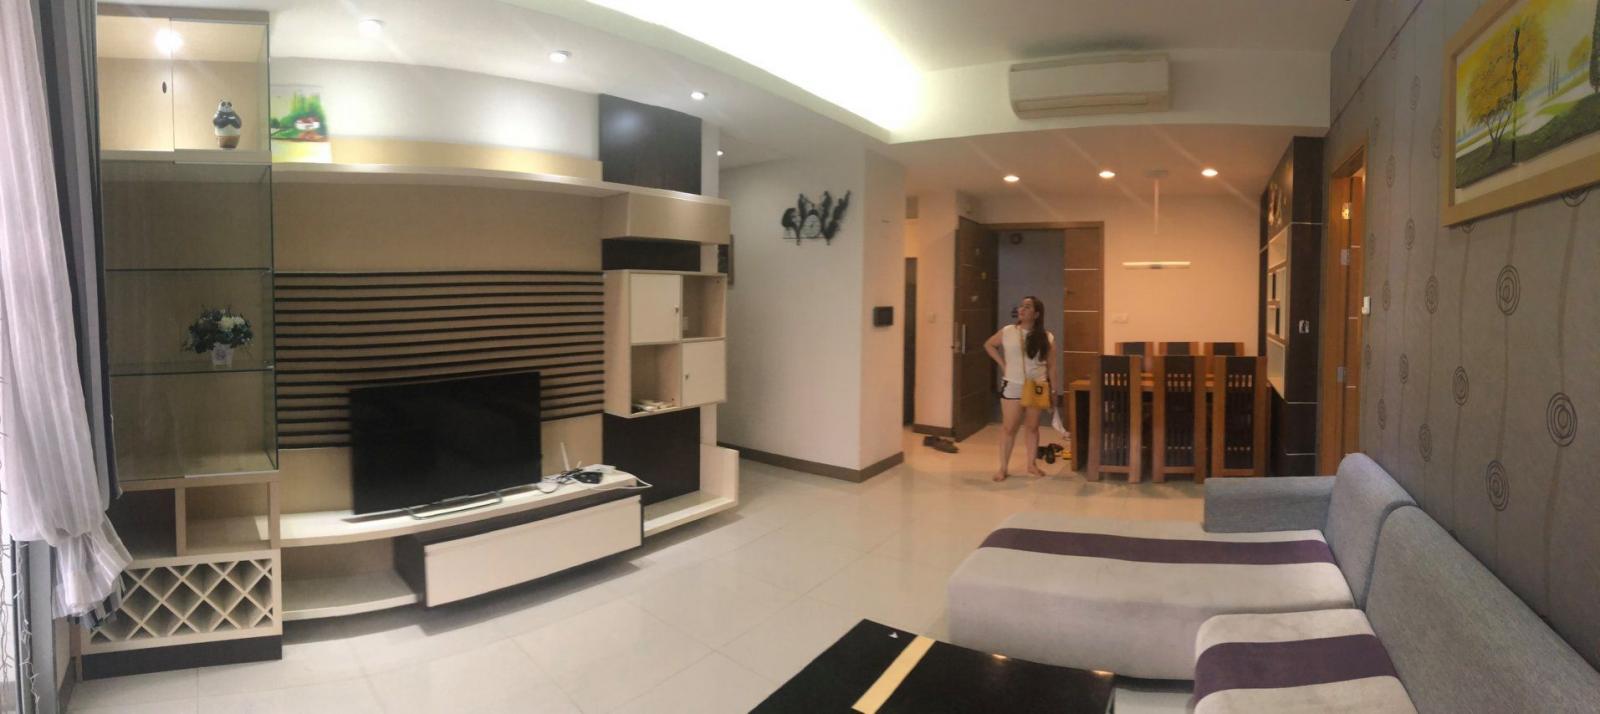 Thuê căn hộ Saigon Airport Plaza 3 phòng ngủ/2WC full tiện nghi #23 Triệu Tel 0942.811.343 Tony (Zalo/viber/phone) đi xem thực tế